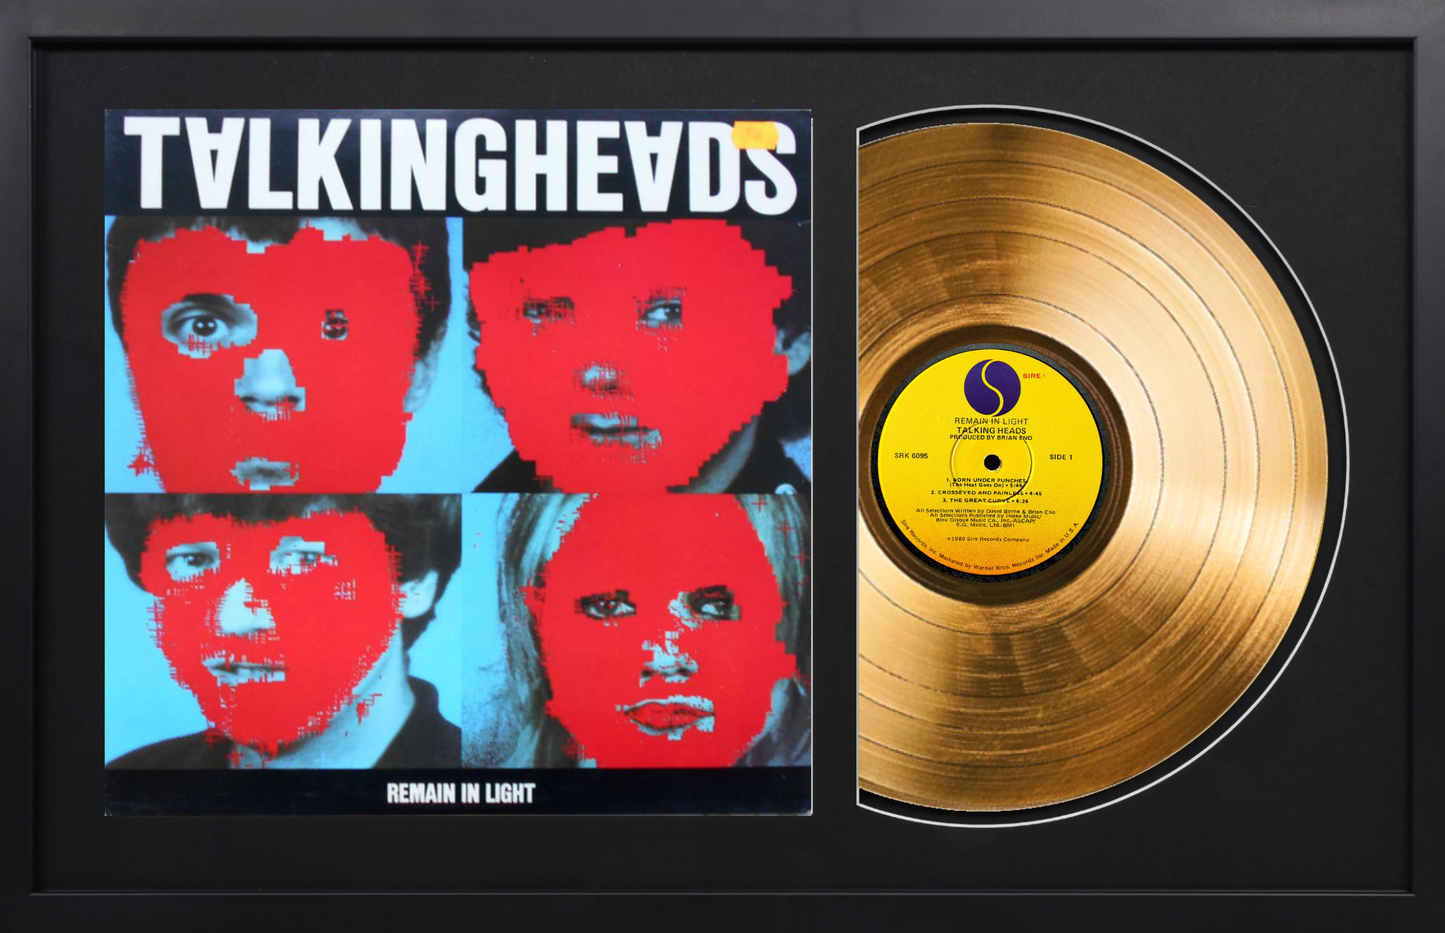 Talking Heads - Remain in Light - 14K Gold Framed Album